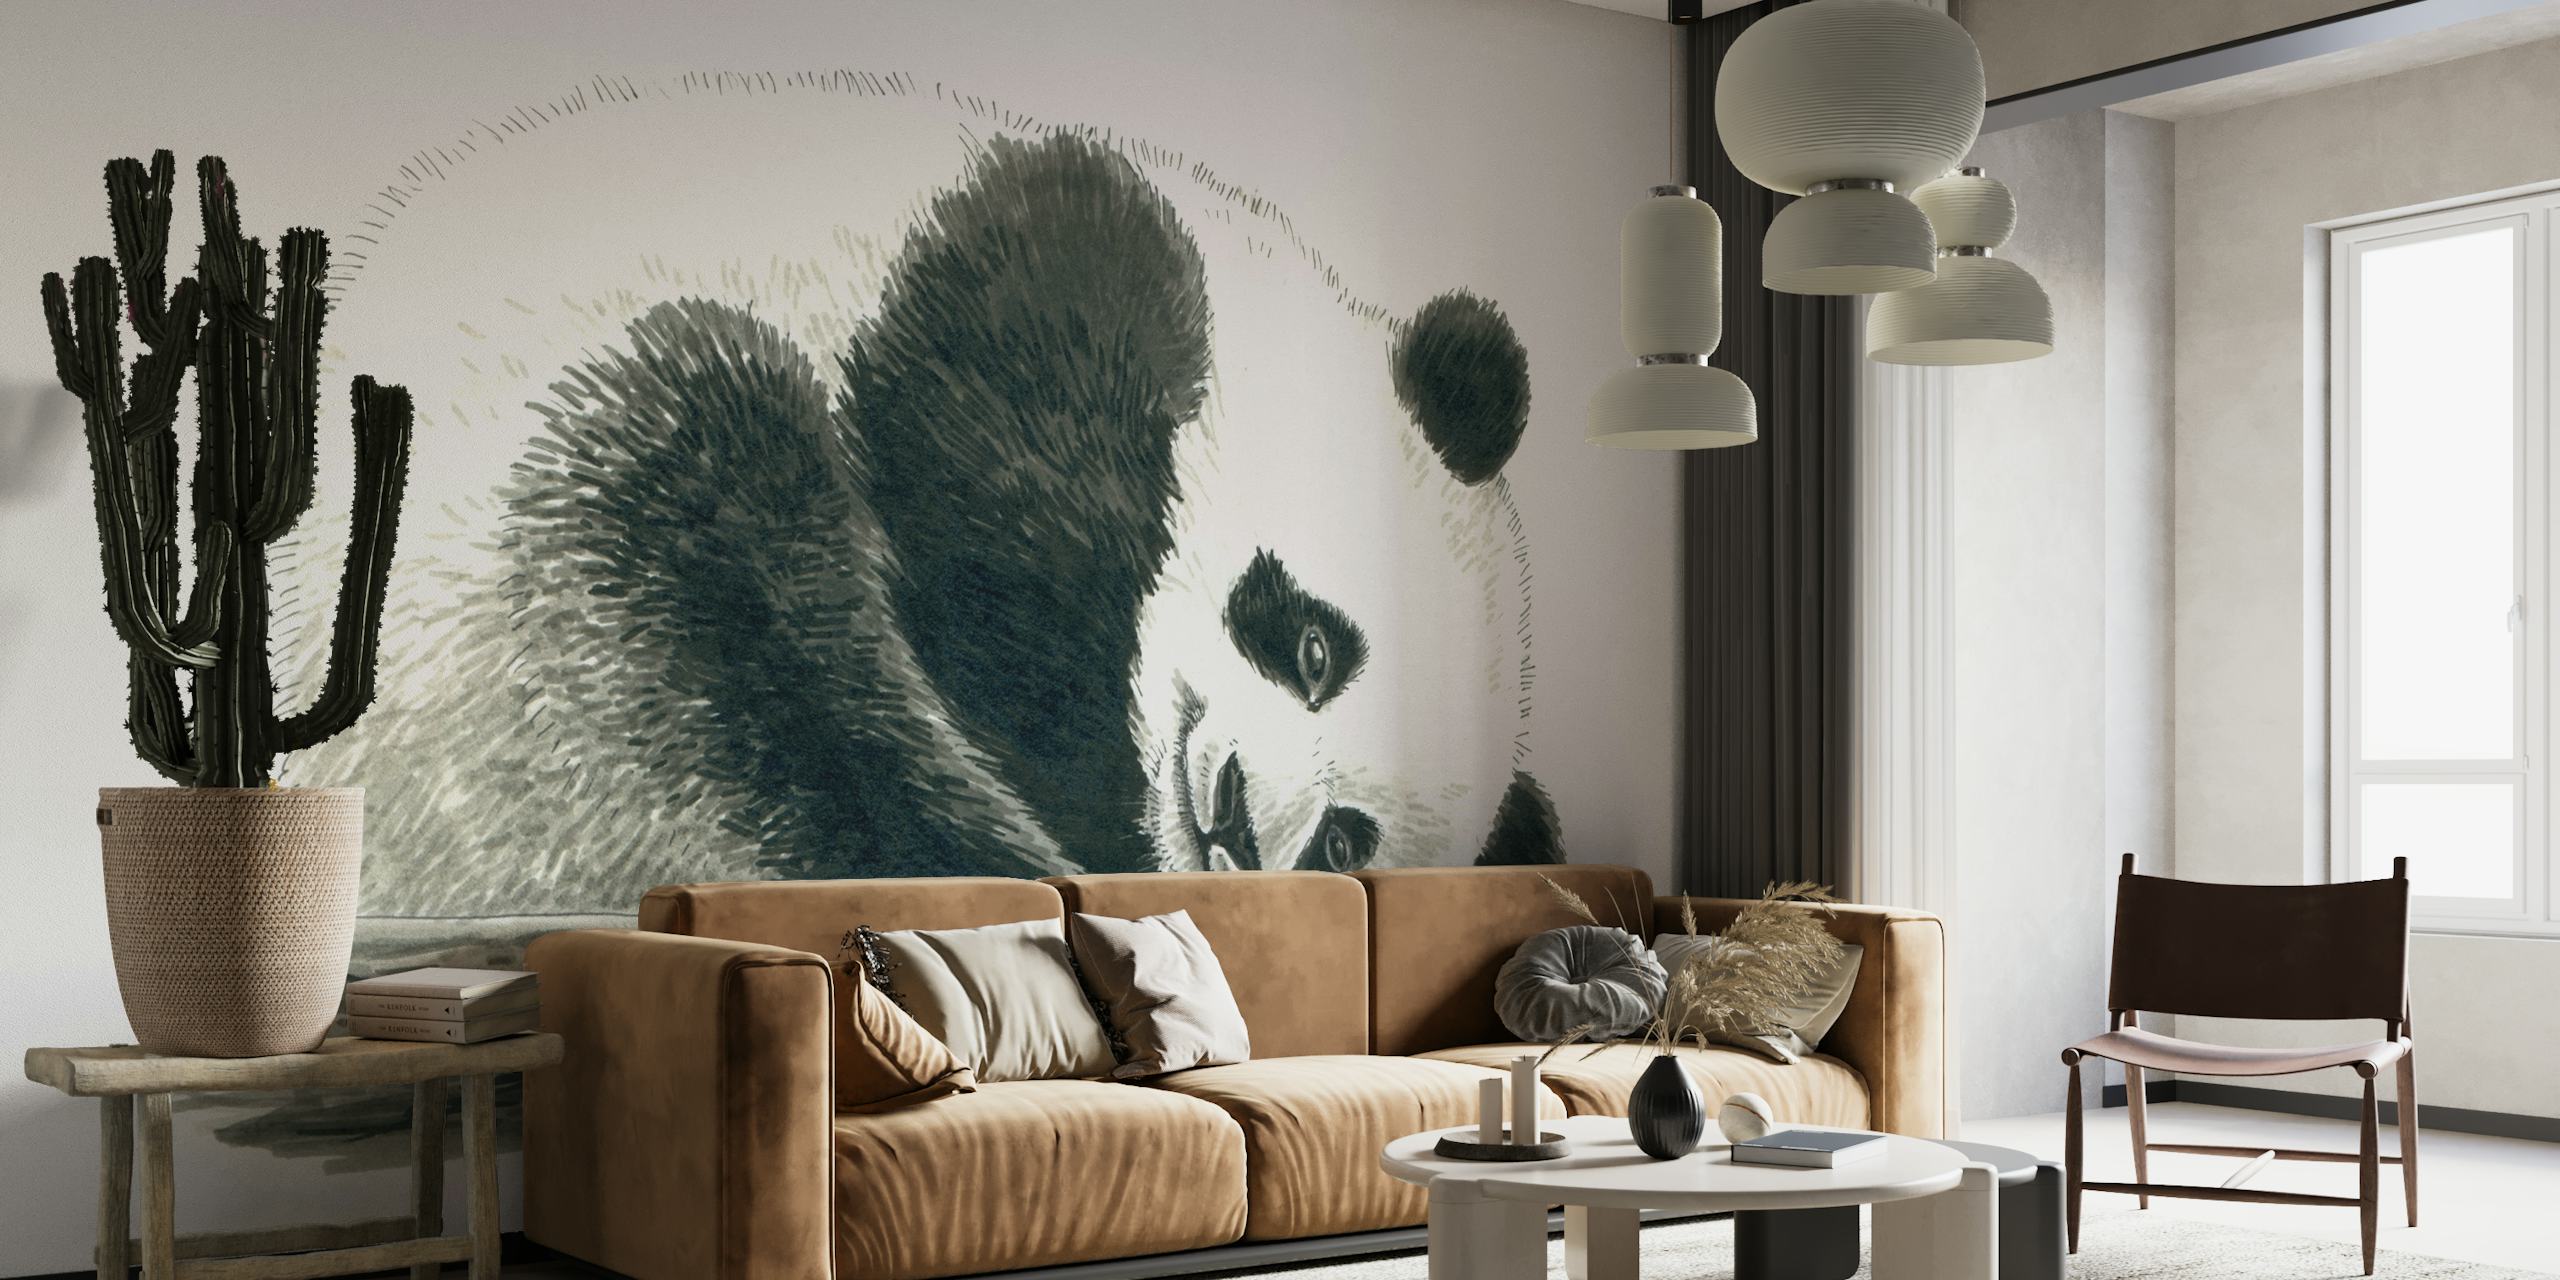 Panda bear wallpaper